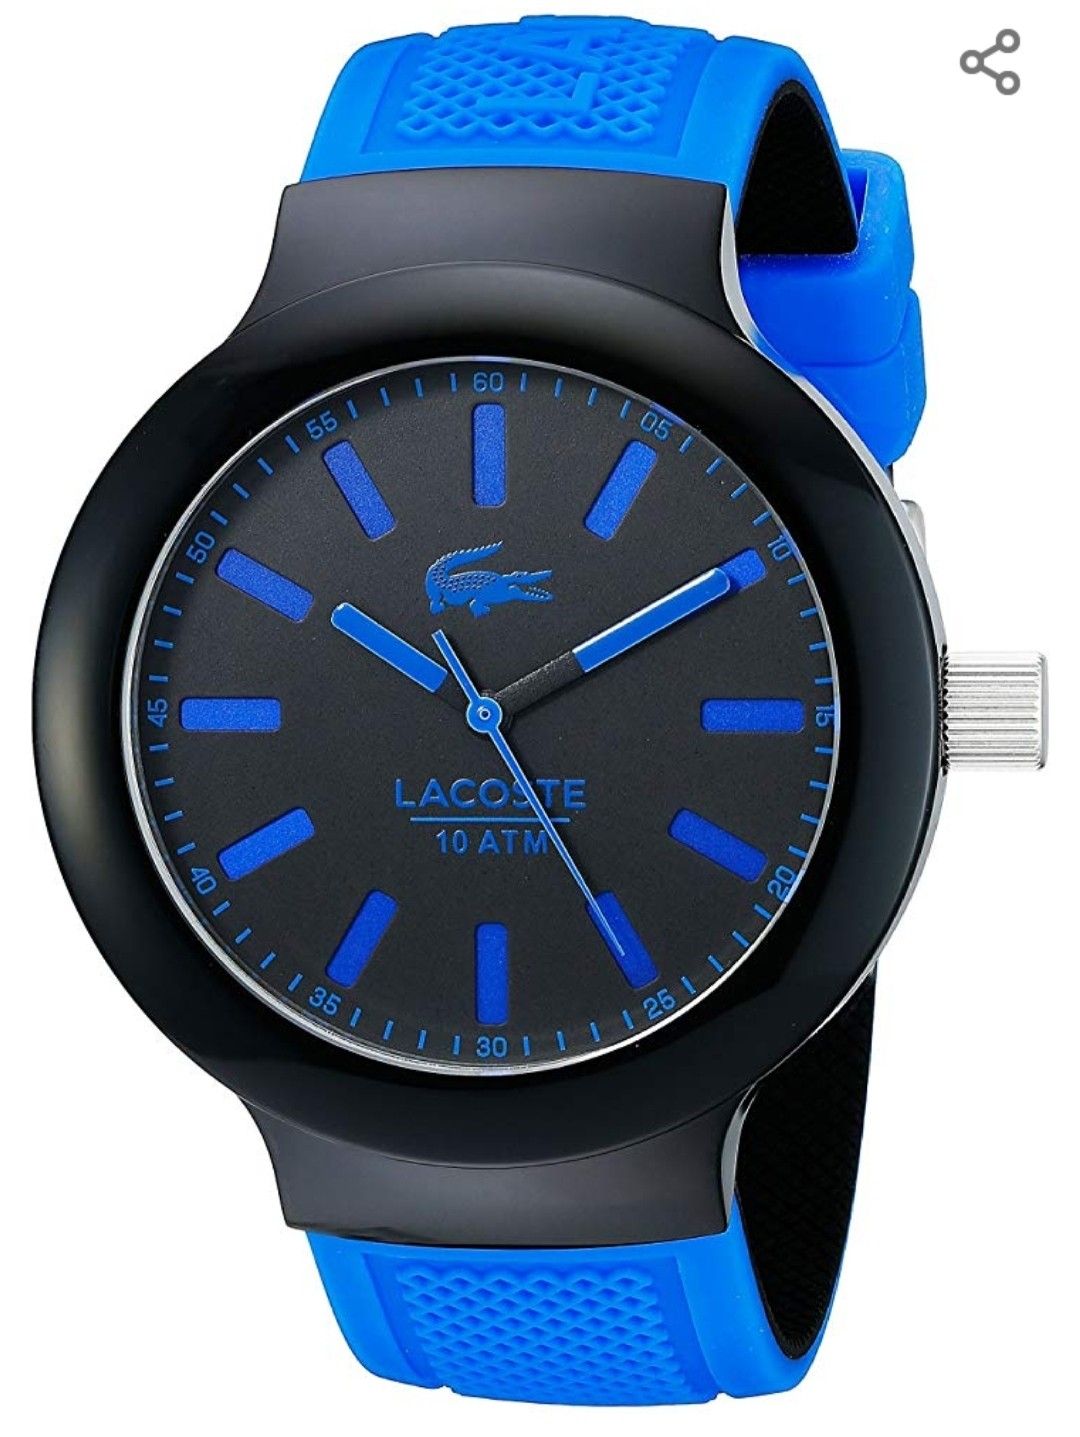 Lacoste Men's watch like new!!